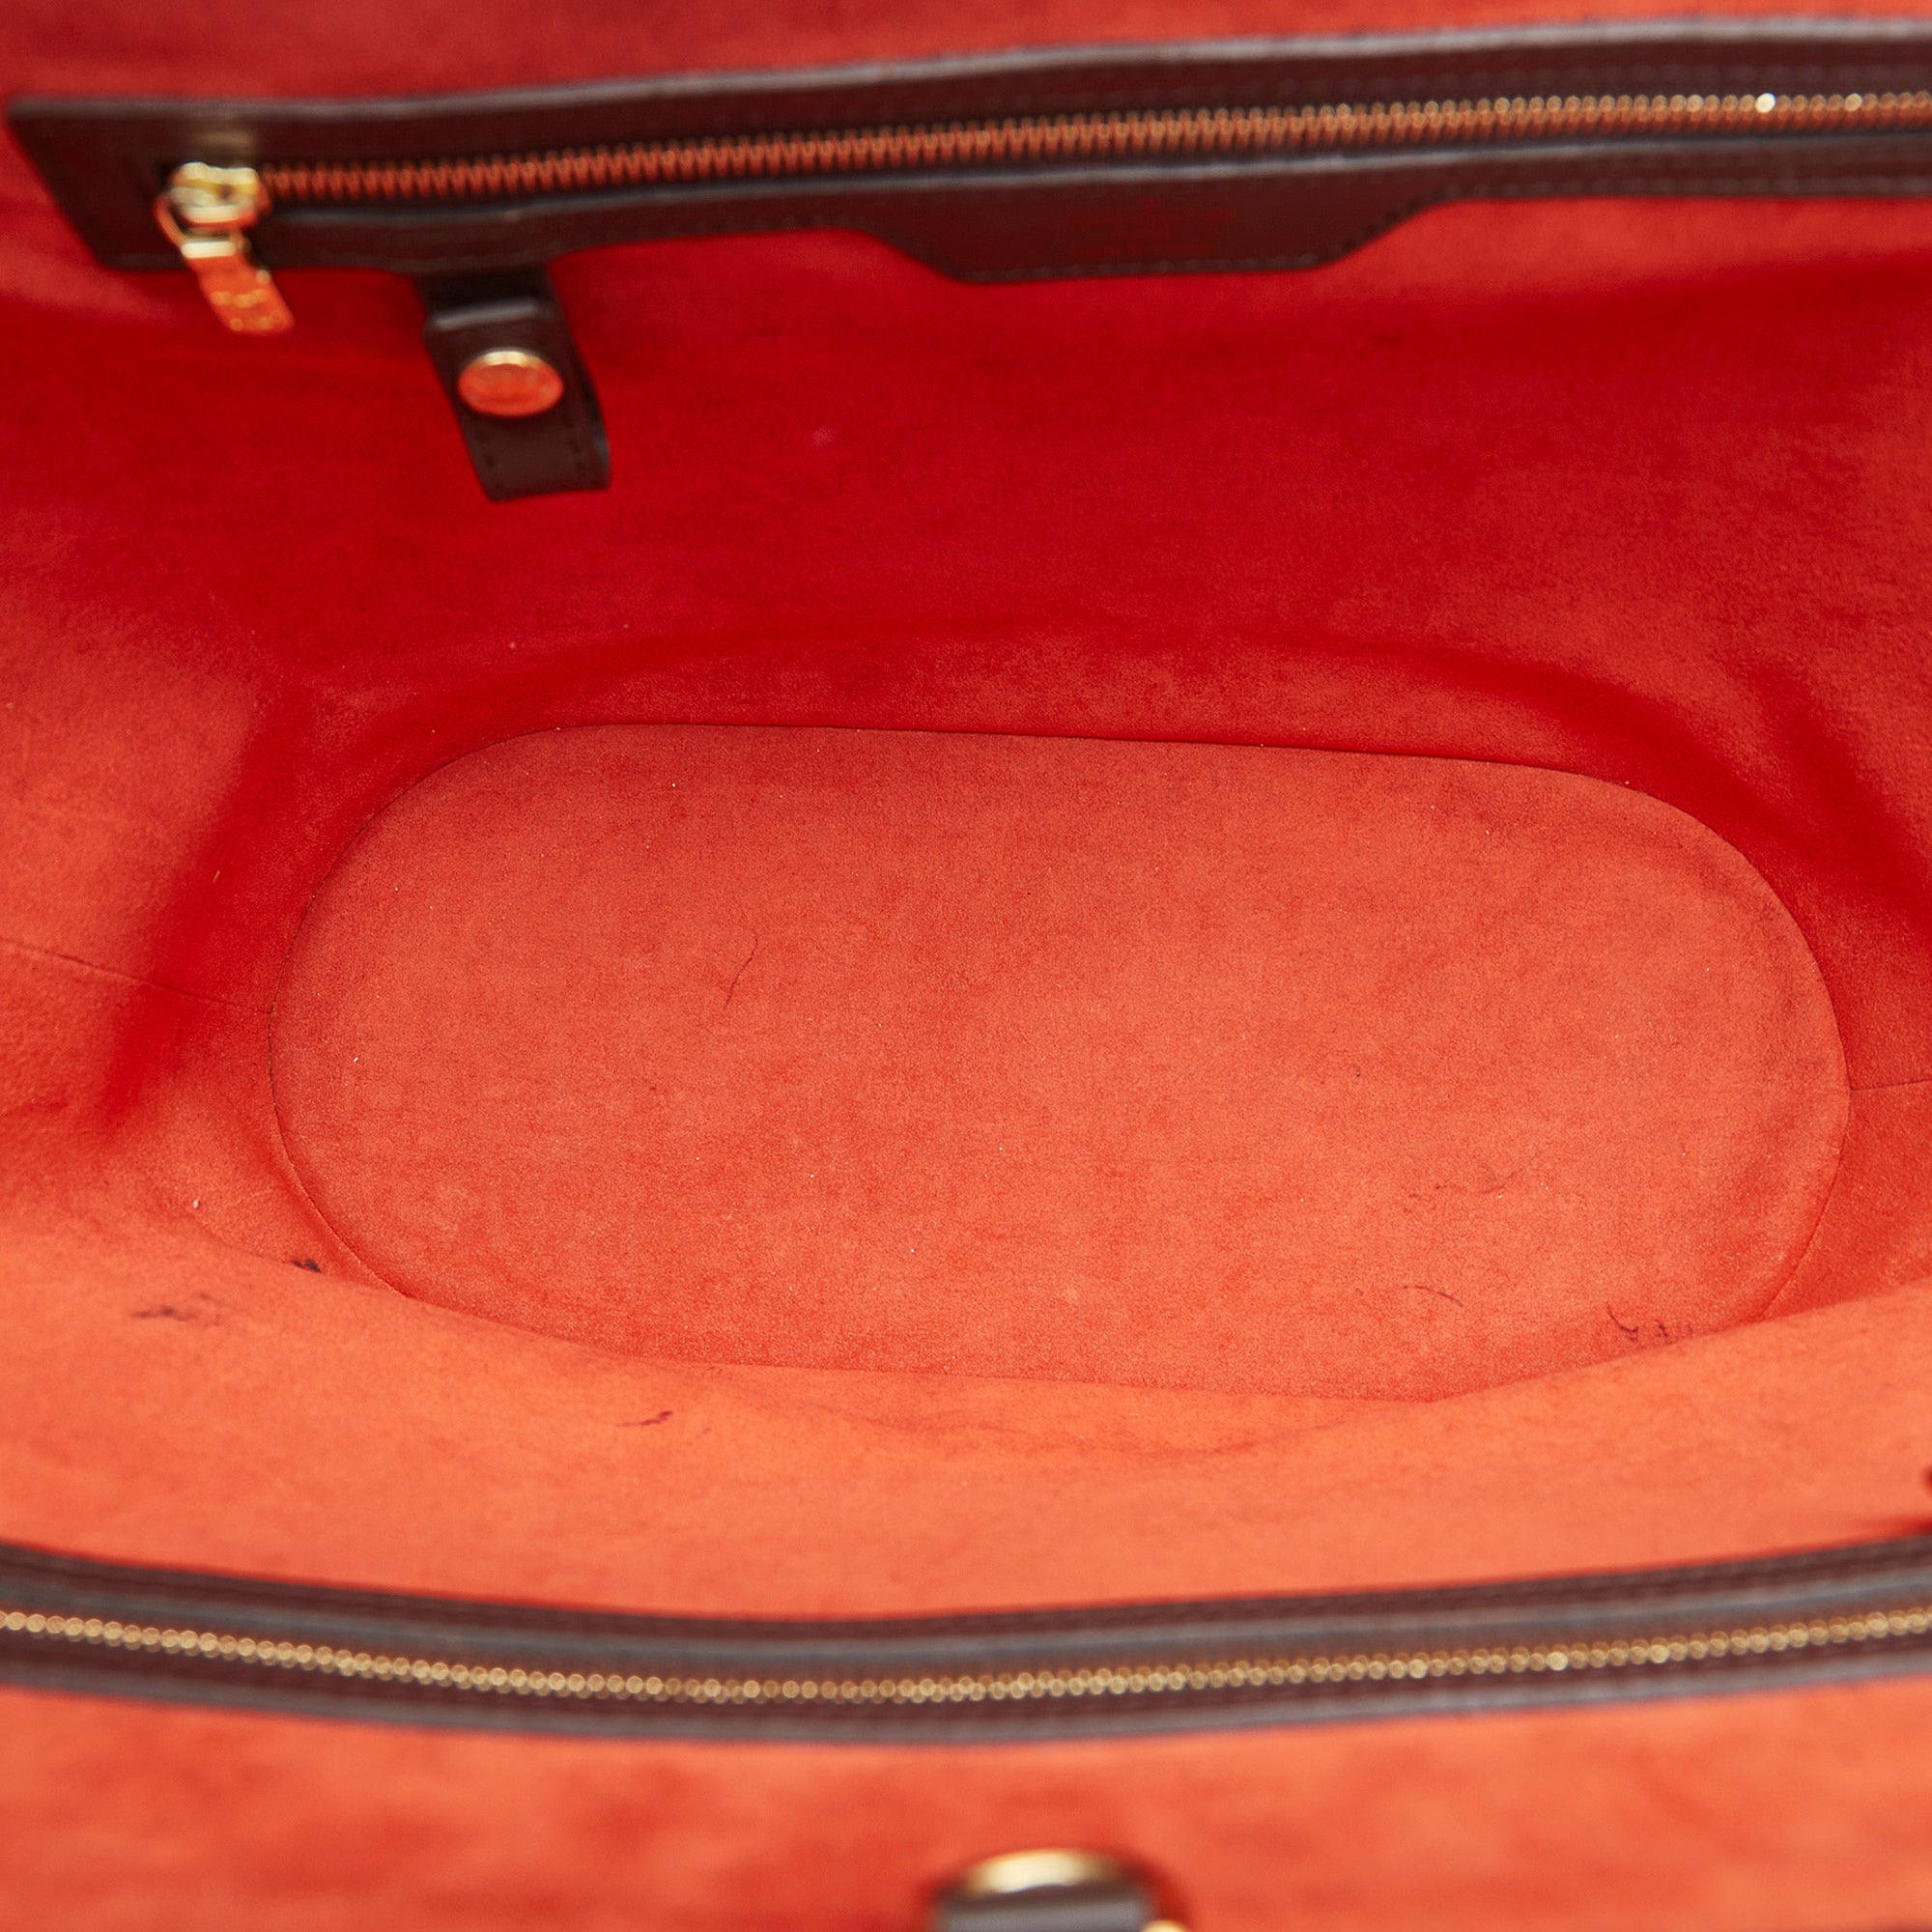 Louis Vuitton Damier Ebene Manosque GM Shoulder Bag